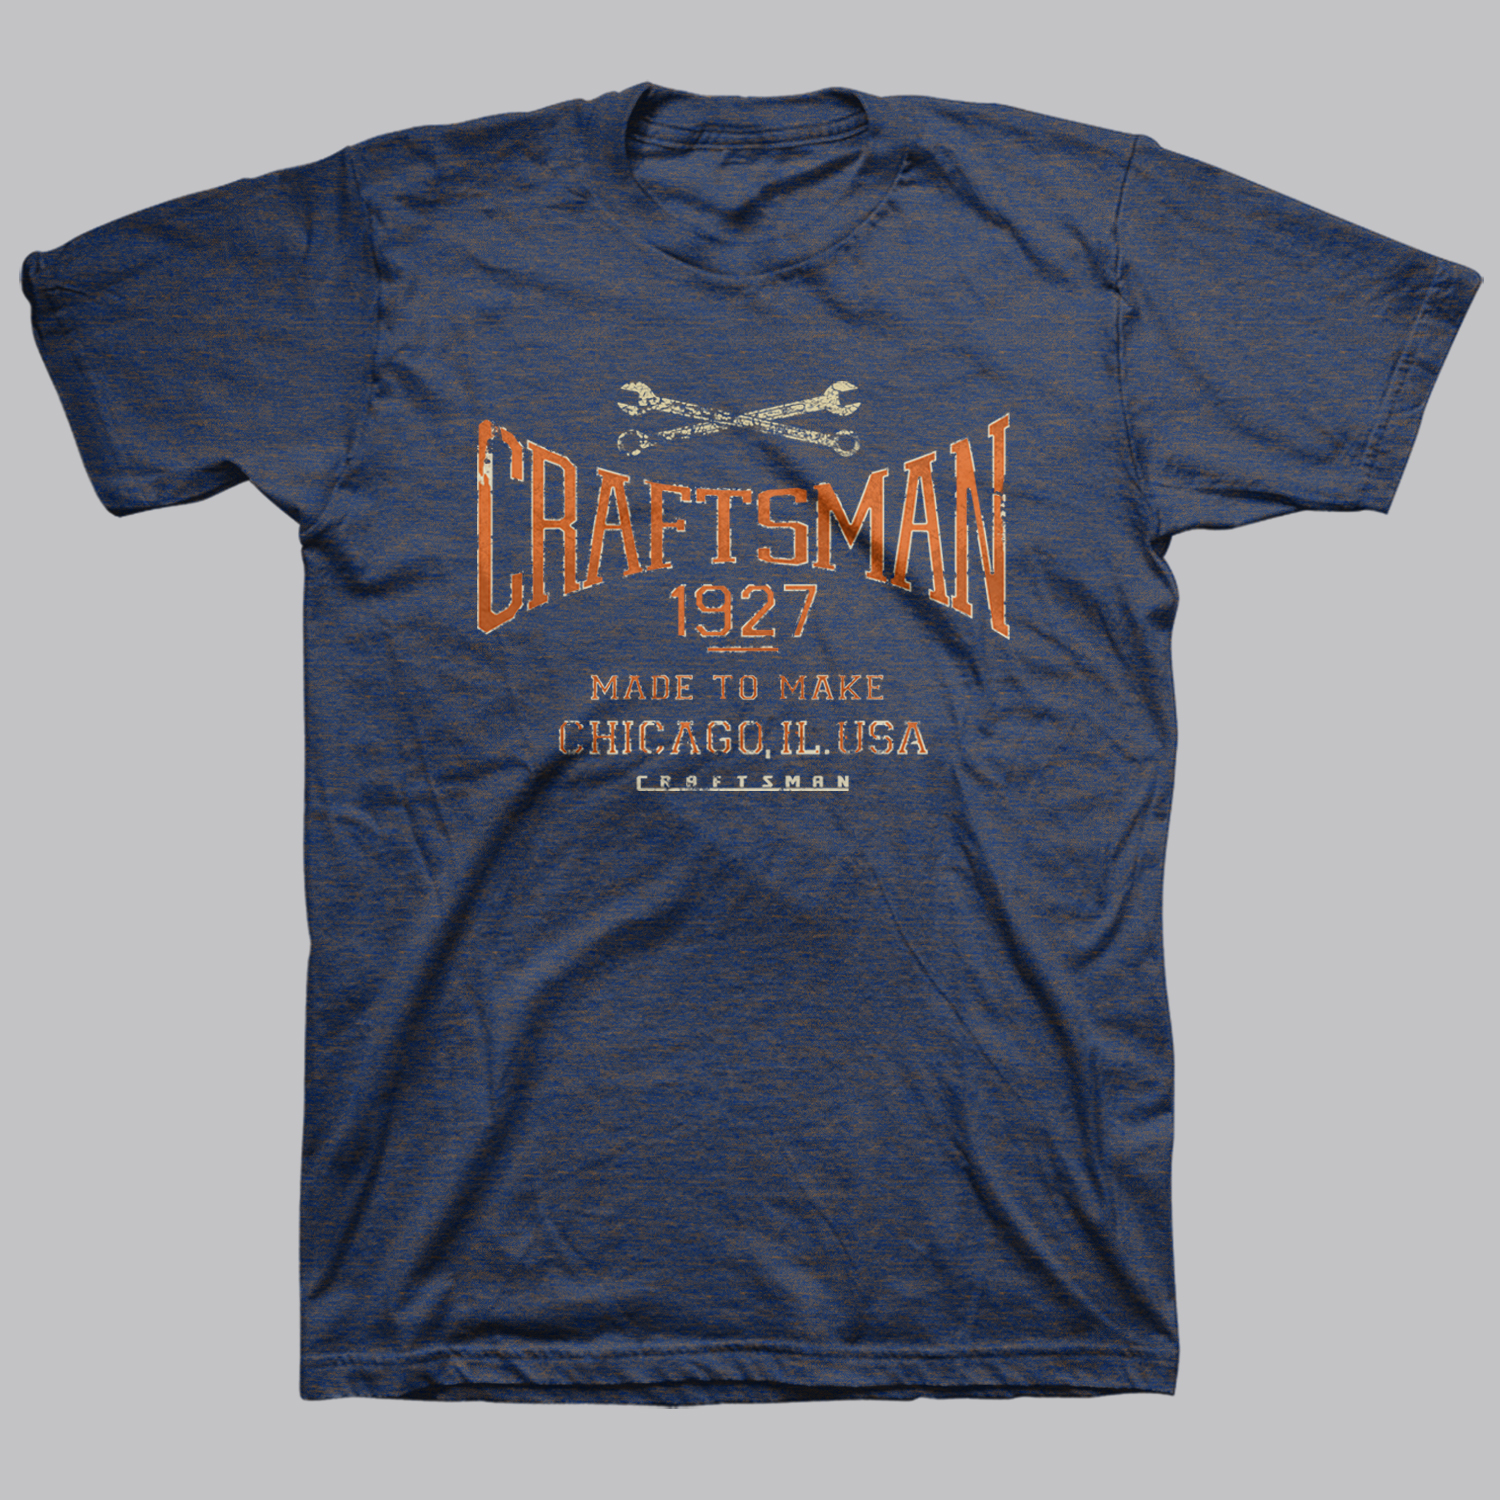 Craftsman Men's Graphic T-Shirt - Made to Make